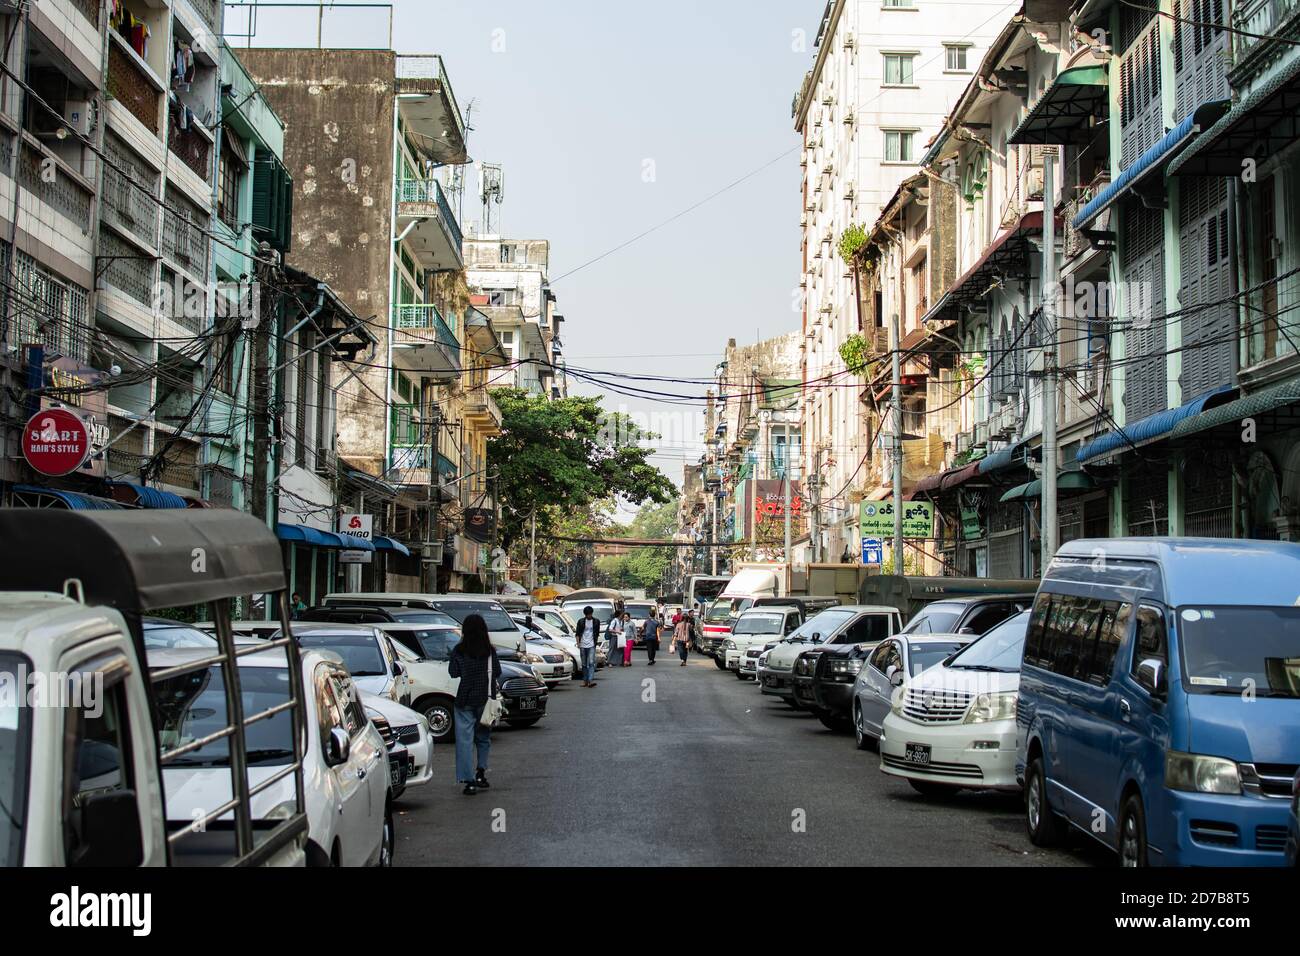 Yangon, Myanmar - 30 de diciembre de 2019: La vida cotidiana ocurre en una calle estrecha local en el centro de la ciudad con coches estacionados y peatones caminando Foto de stock